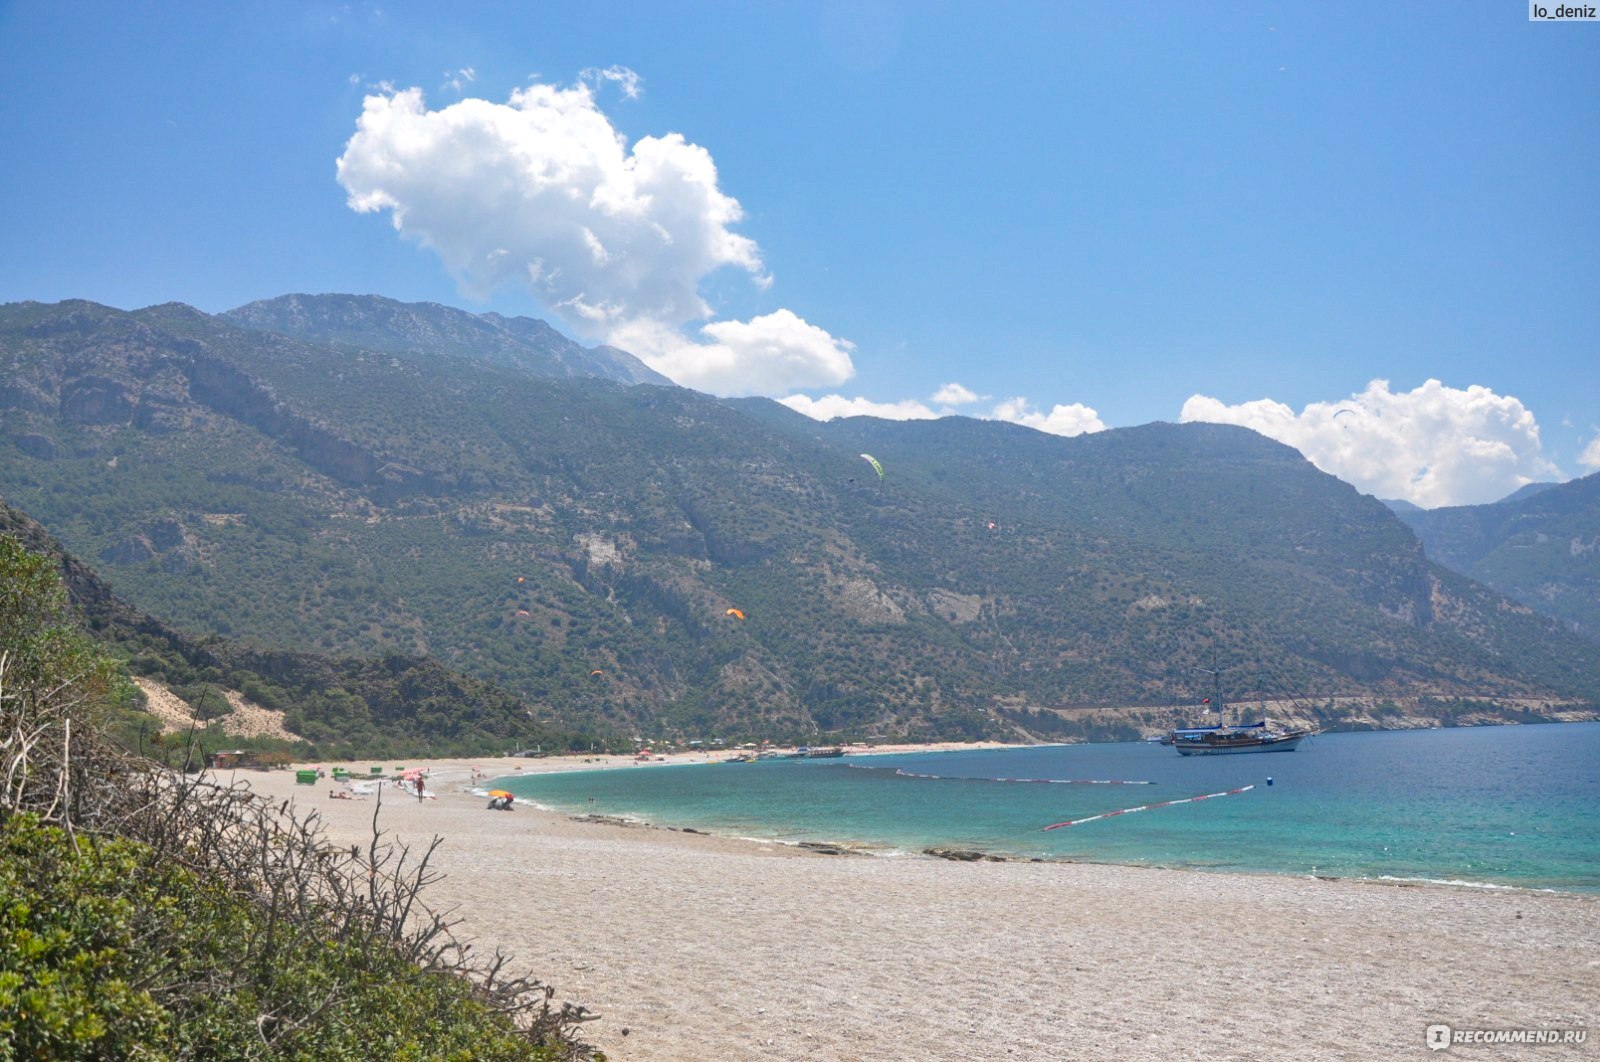 Турция, Олюдениз - «Самый красивый пляж в мире. Окрестности Олюдениз:  Долина бабочек. Голубая лагуна. Треккинг в Олюдениз. Пляжи региона. Отели  высоко в горах и на побережье. Цены и советы по отдыху.» | отзывы